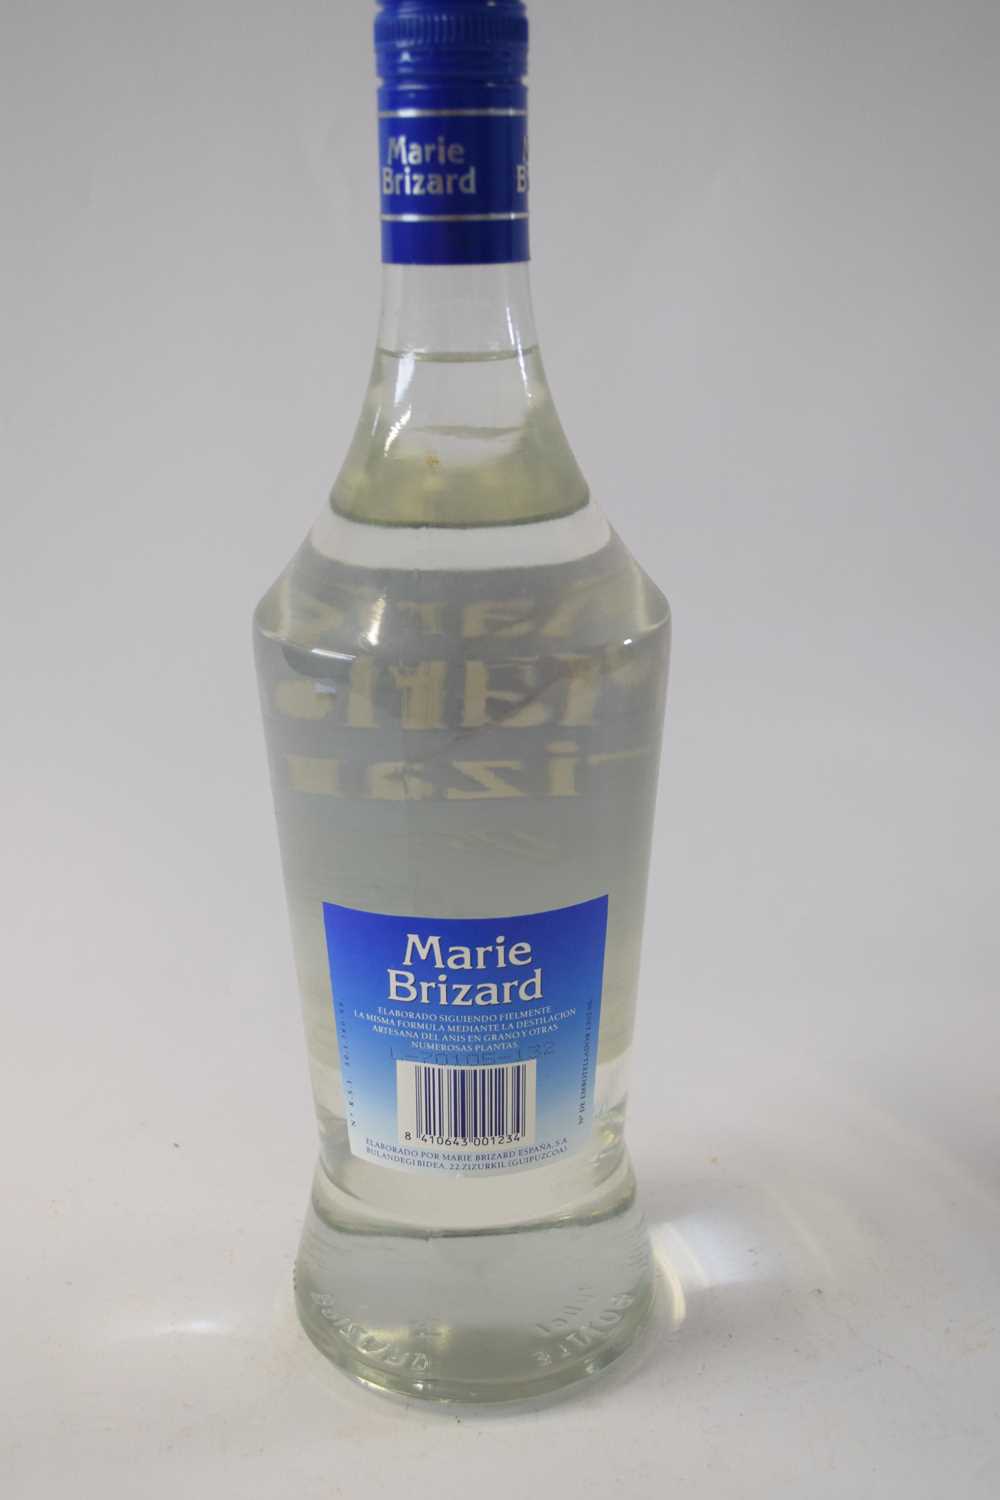 Marie Brizard Anisette liqueur, 100cl, 25% vol, 1 bottle - Image 2 of 2